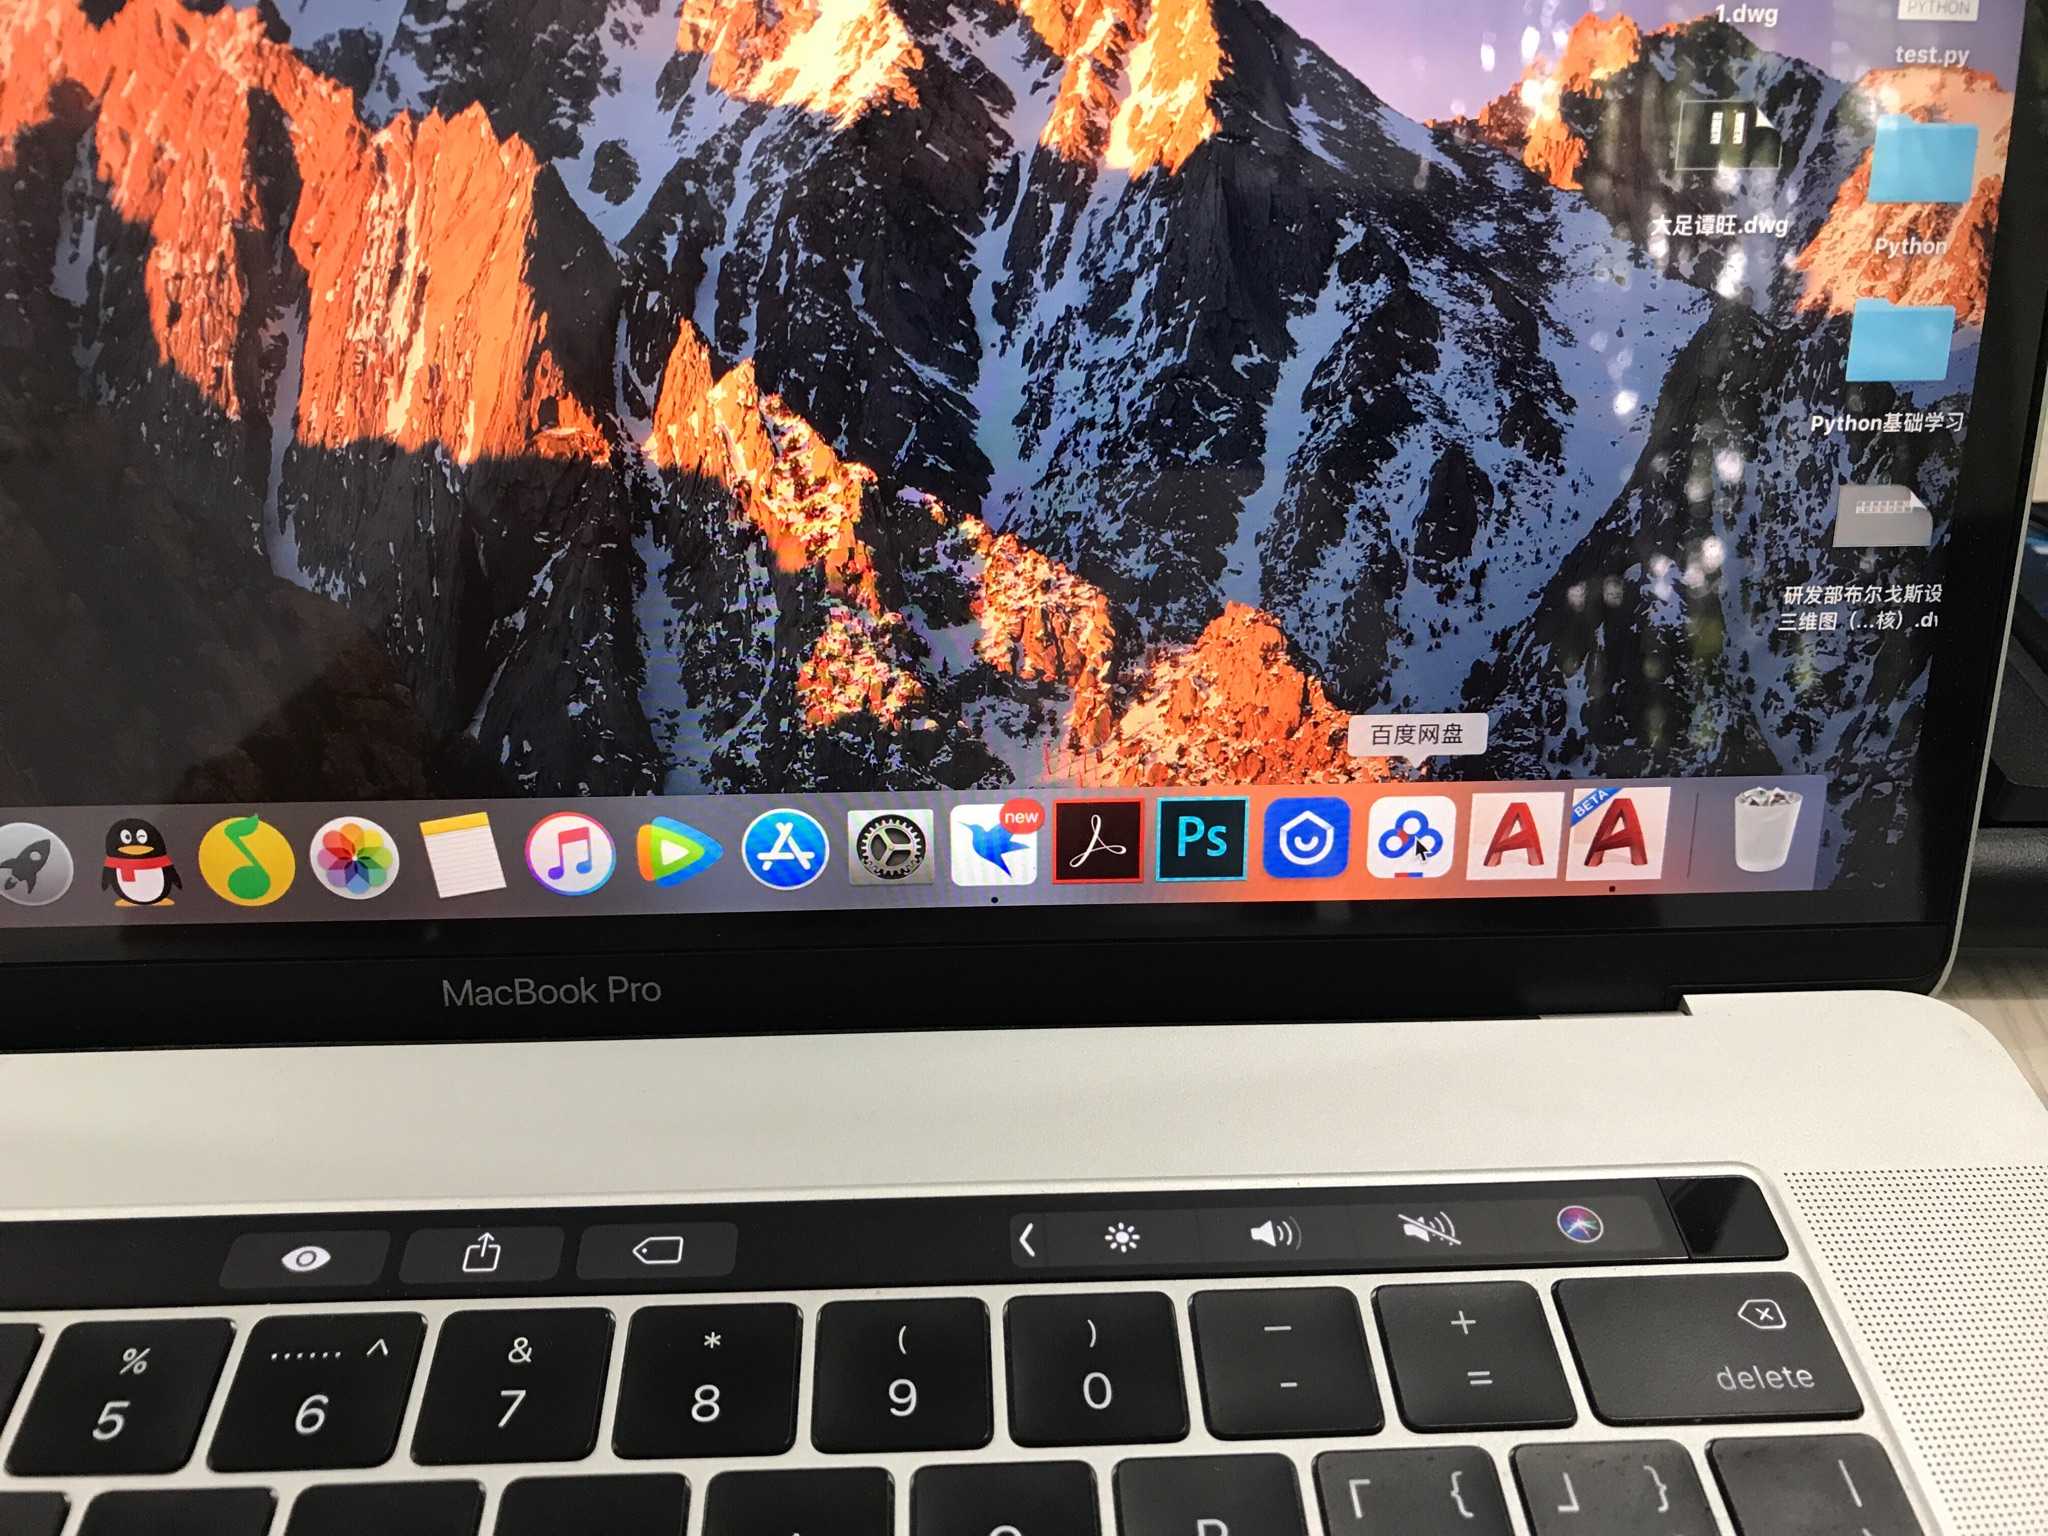 苹果电脑mac os系统可以安装cad,autocad for mac,酷家乐也有mac客户